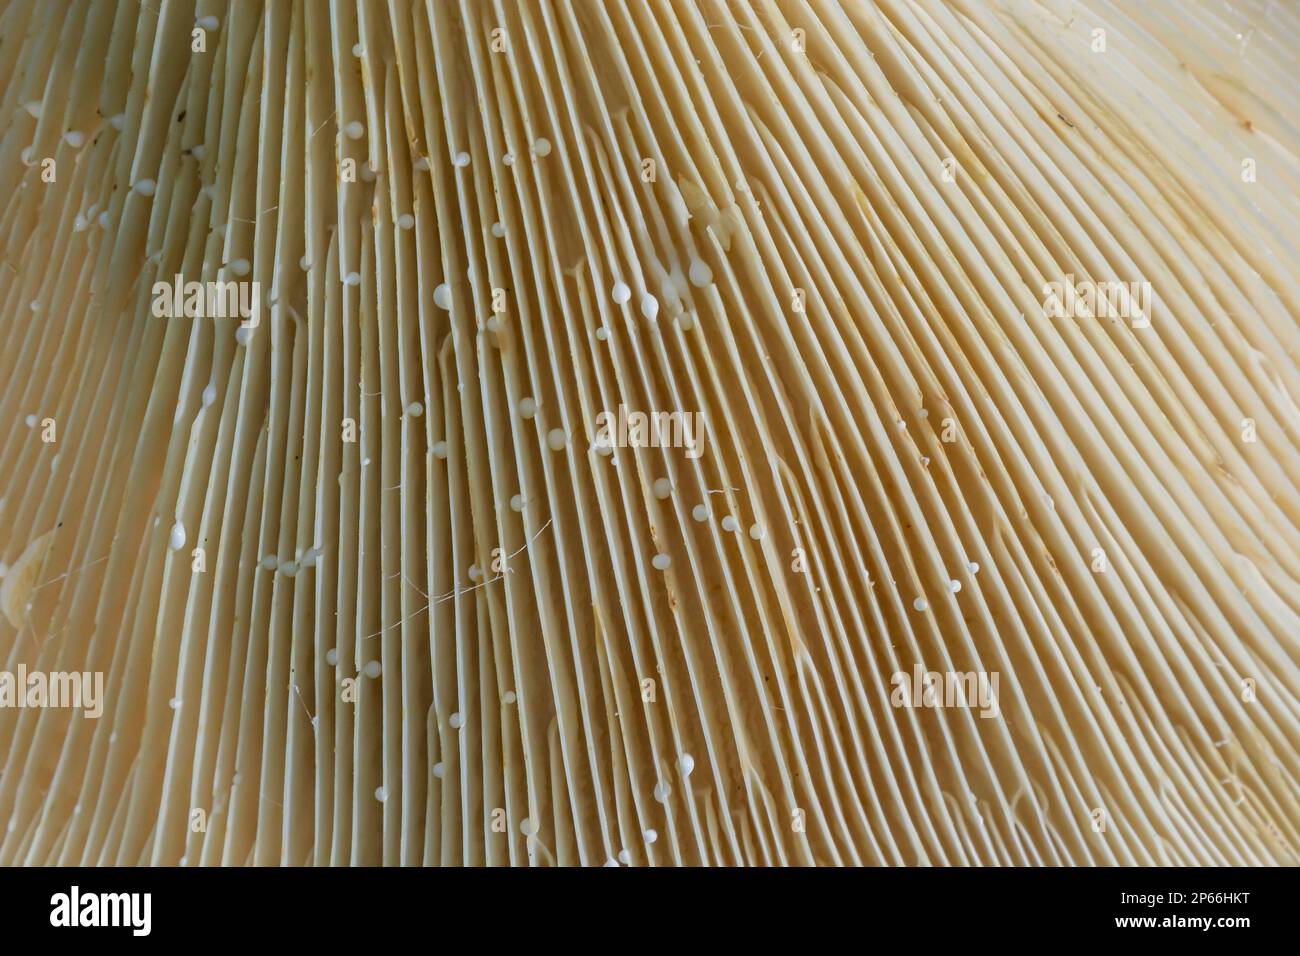 Selektiver Fokus, Nahaufnahme abstrakter Kappen von Champignon-Pilzen-Bodenansicht. Nahrungsmittelhintergrund, Makrofotografie eines Pilzes. Stockfoto